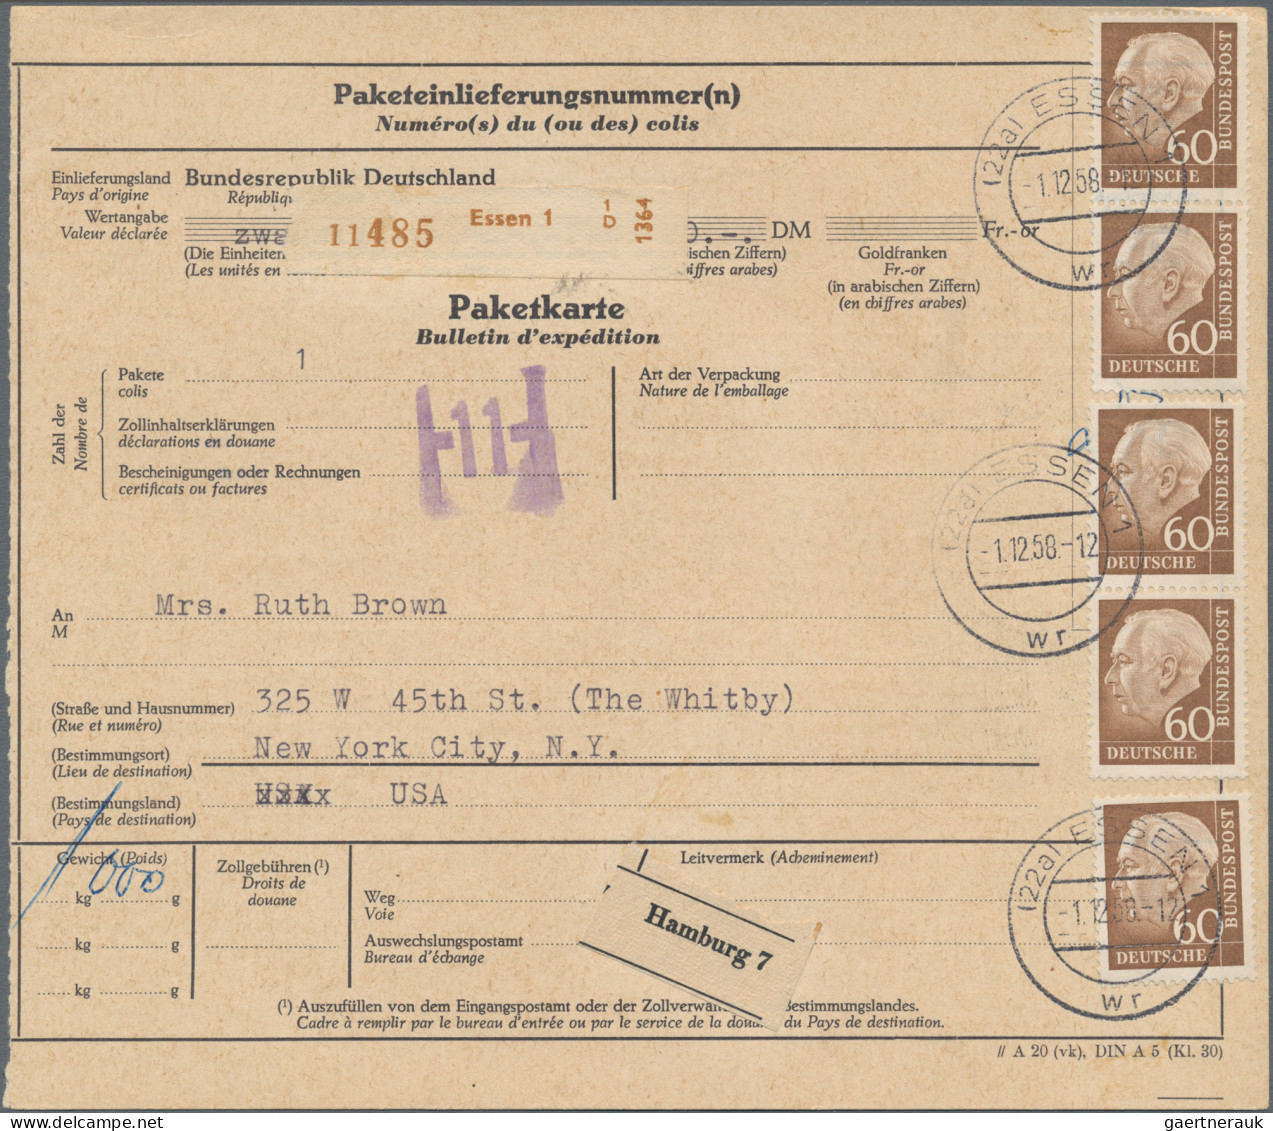 Bundesrepublik Deutschland: 1956/1959, HEUSS II und Heuss Medaillion, Sammlung m